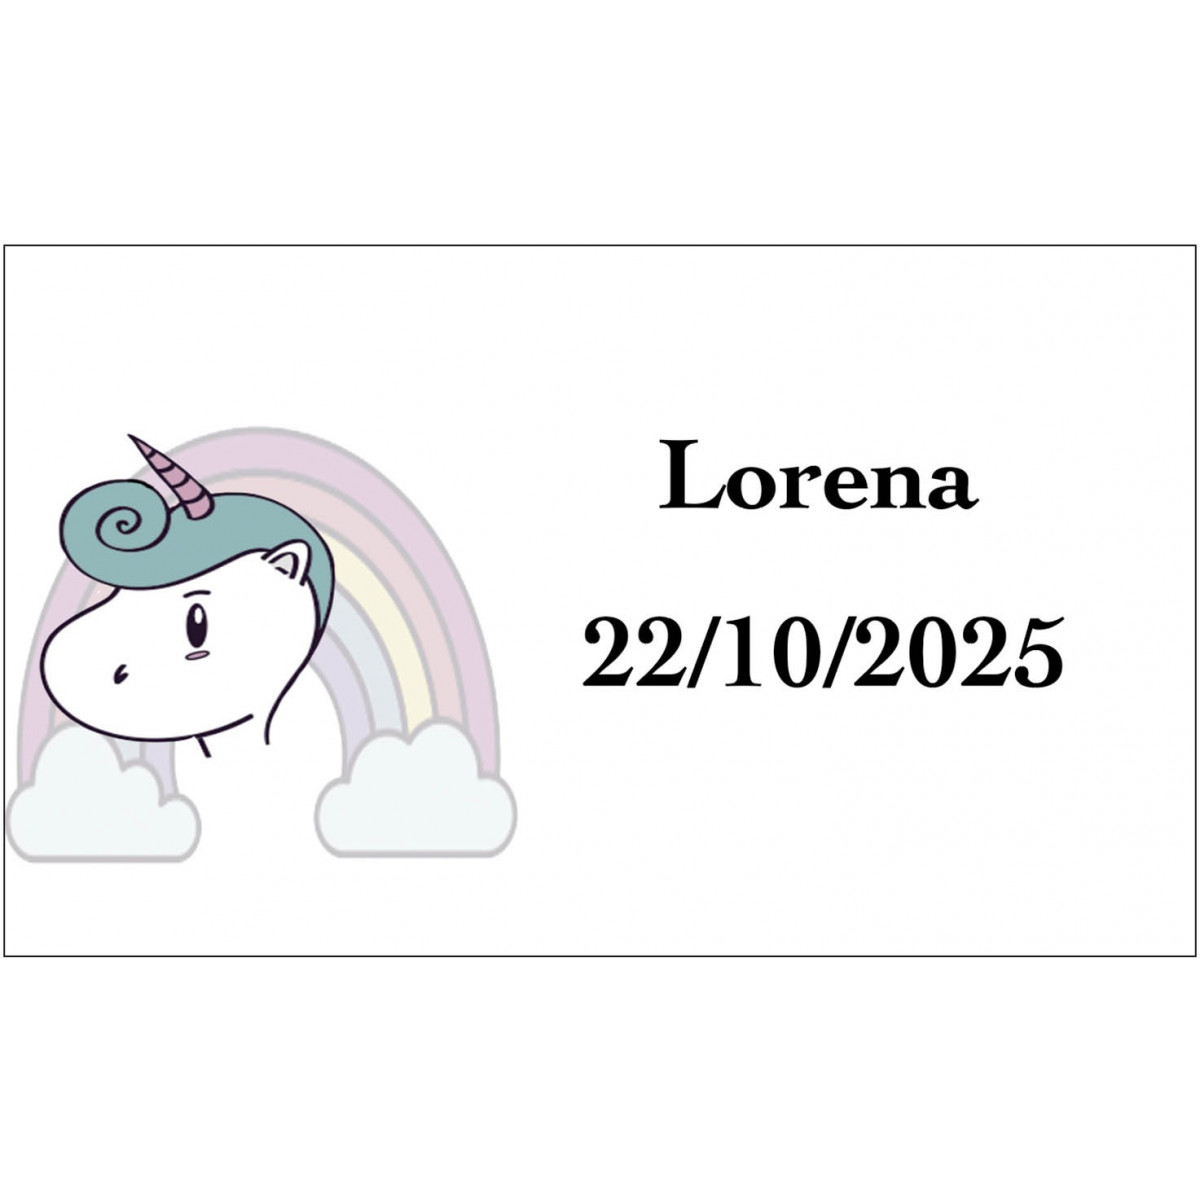 Adesivo unicorno arcobaleno personalizzato con nome e data